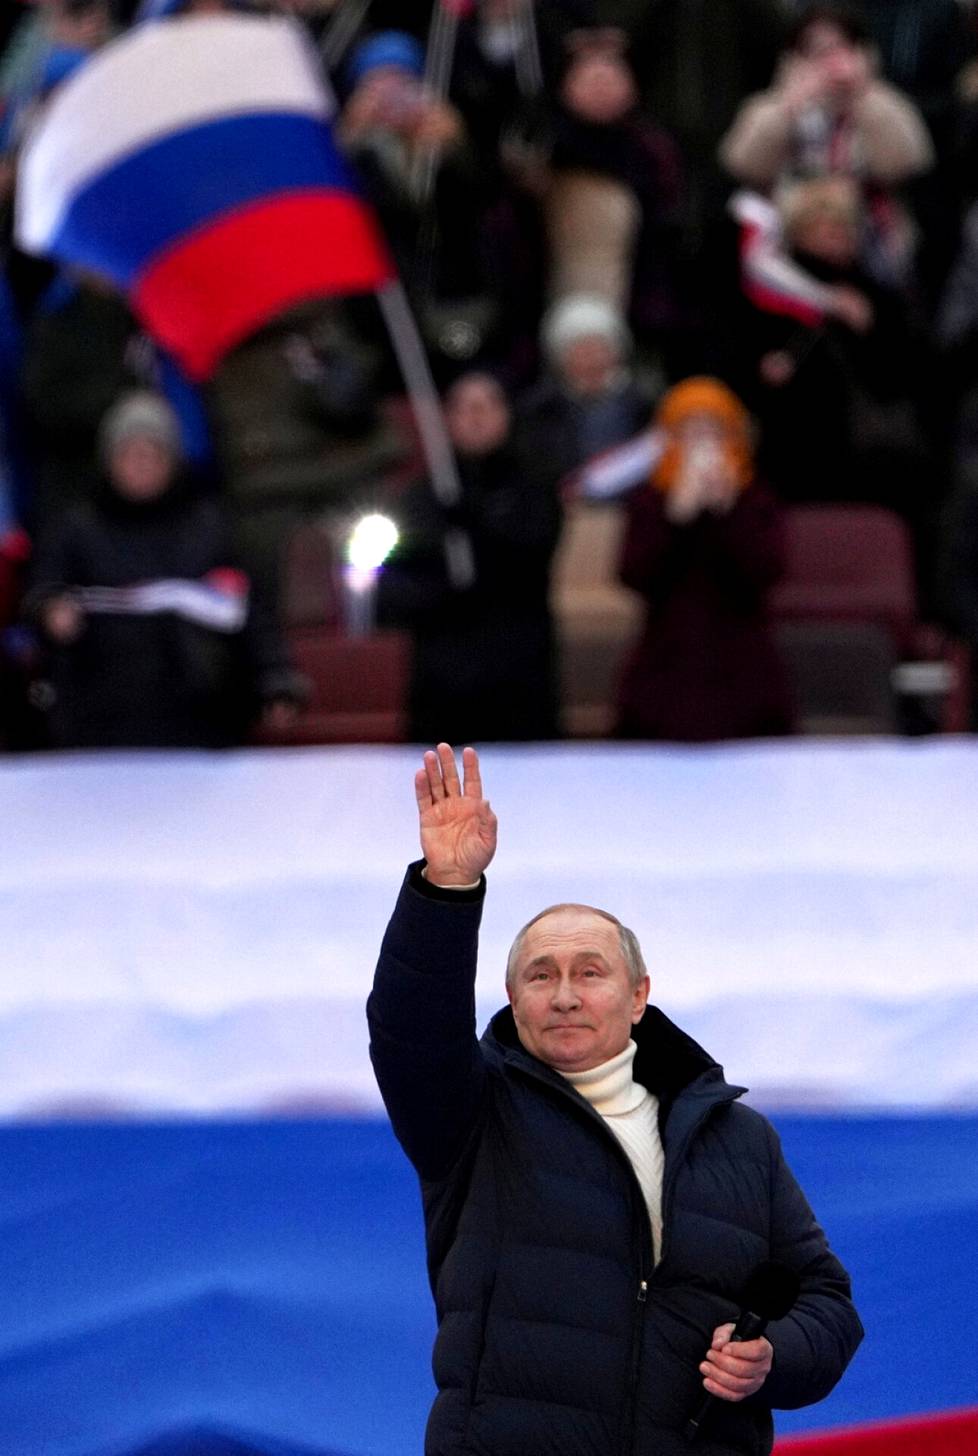 Putinin ensimmäinen julkinen esiintyminen sodan alkamisen jälkeen oli stadionpuhe Moskovassa maaliskuussa.